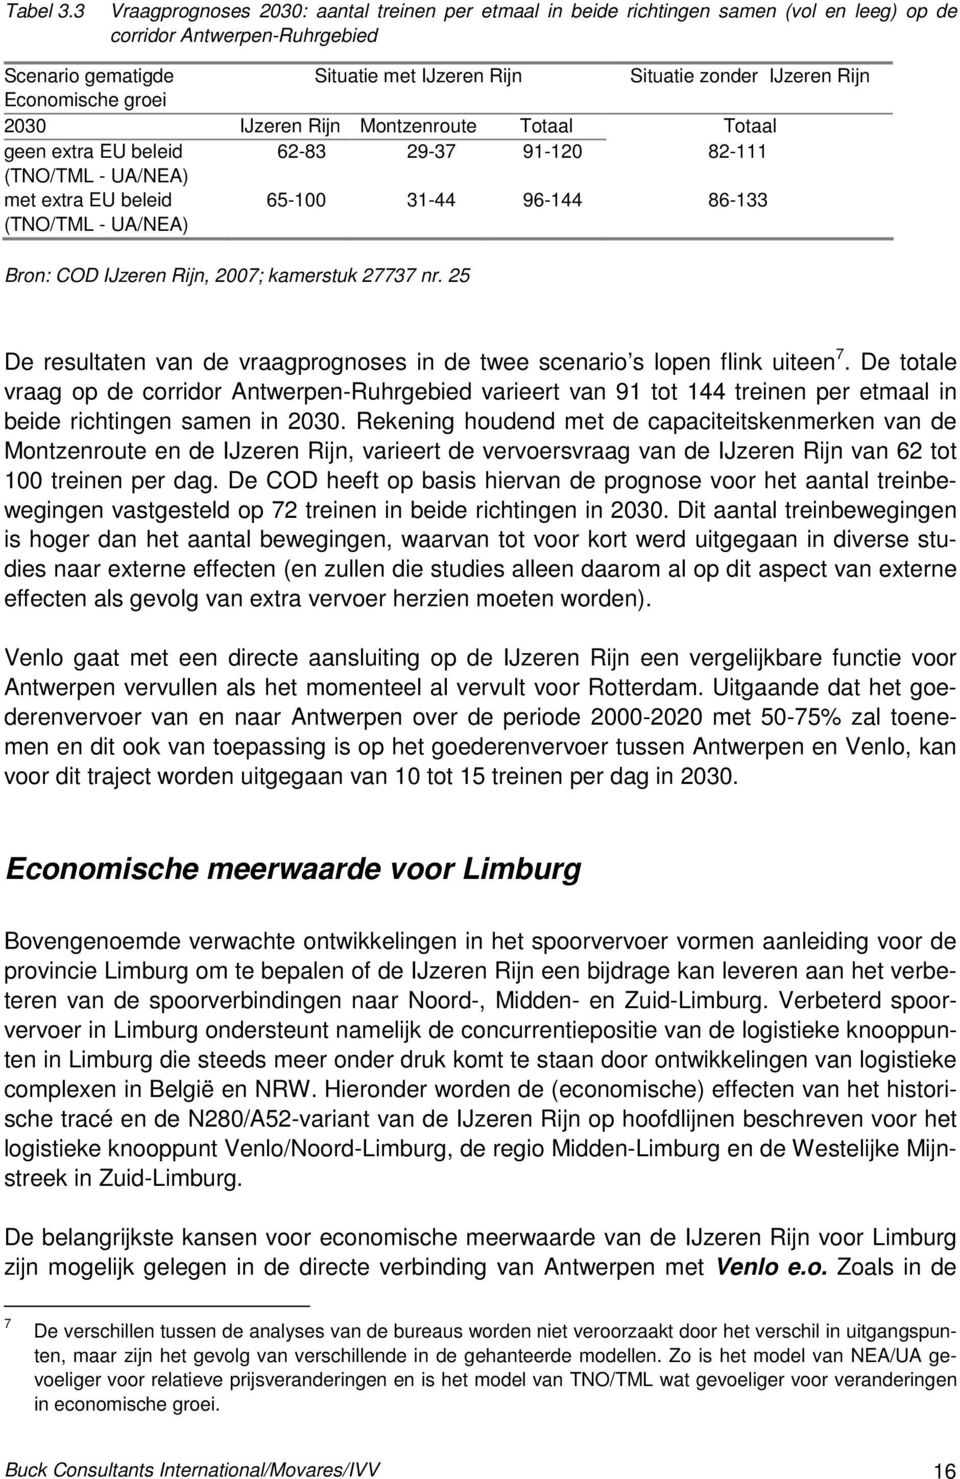 Economische groei 2030 IJzeren Rijn Montzenroute Totaal Totaal geen extra EU beleid 62-83 29-37 91-120 82-111 (TNO/TML - UA/NEA) met extra EU beleid (TNO/TML - UA/NEA) 65-100 31-44 96-144 86-133